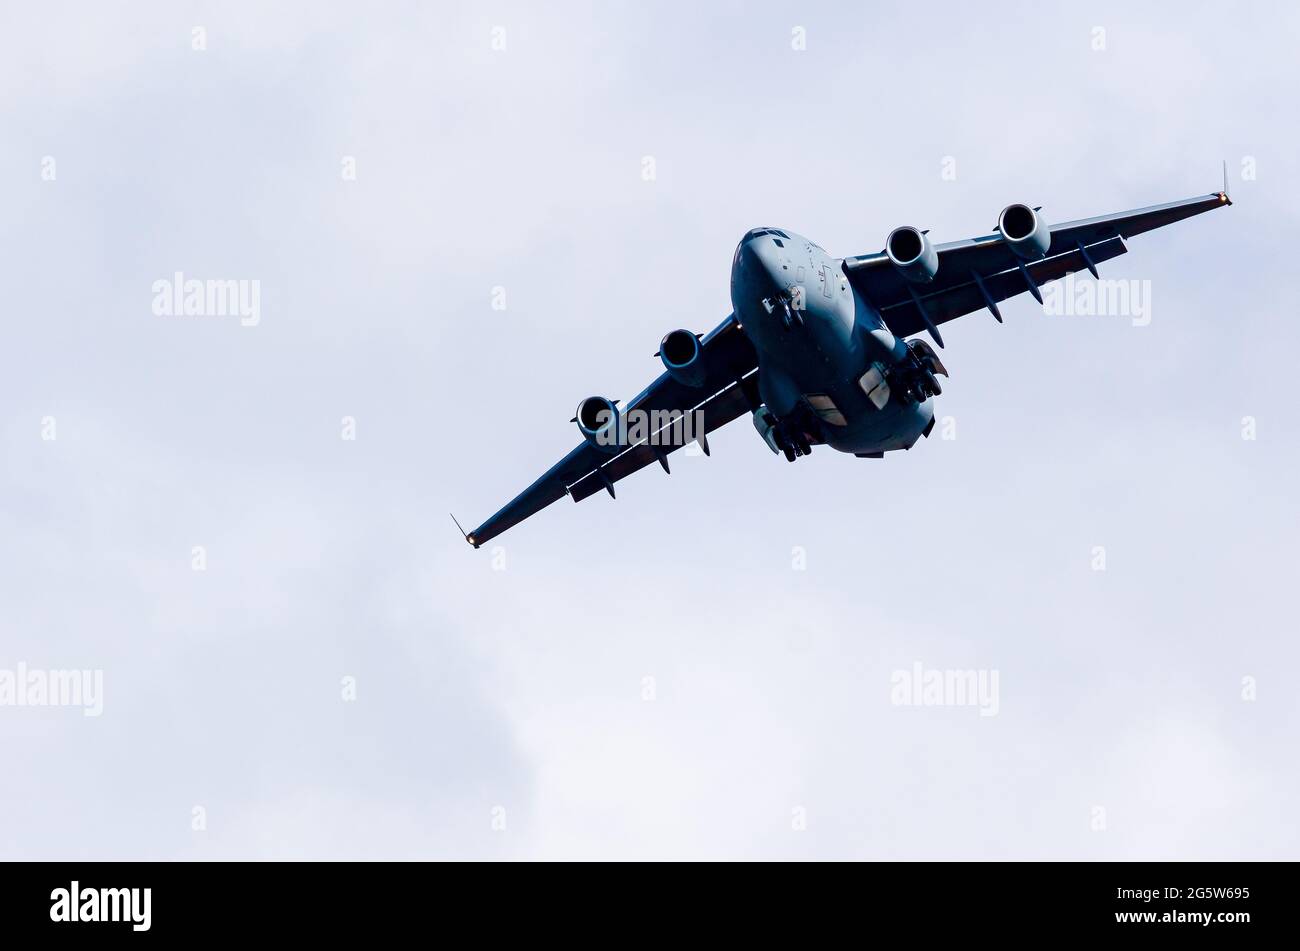 RAF C17 su un volo di allenamento durante il giorno con cielo blu chiaro. Spazio per la copia Foto Stock